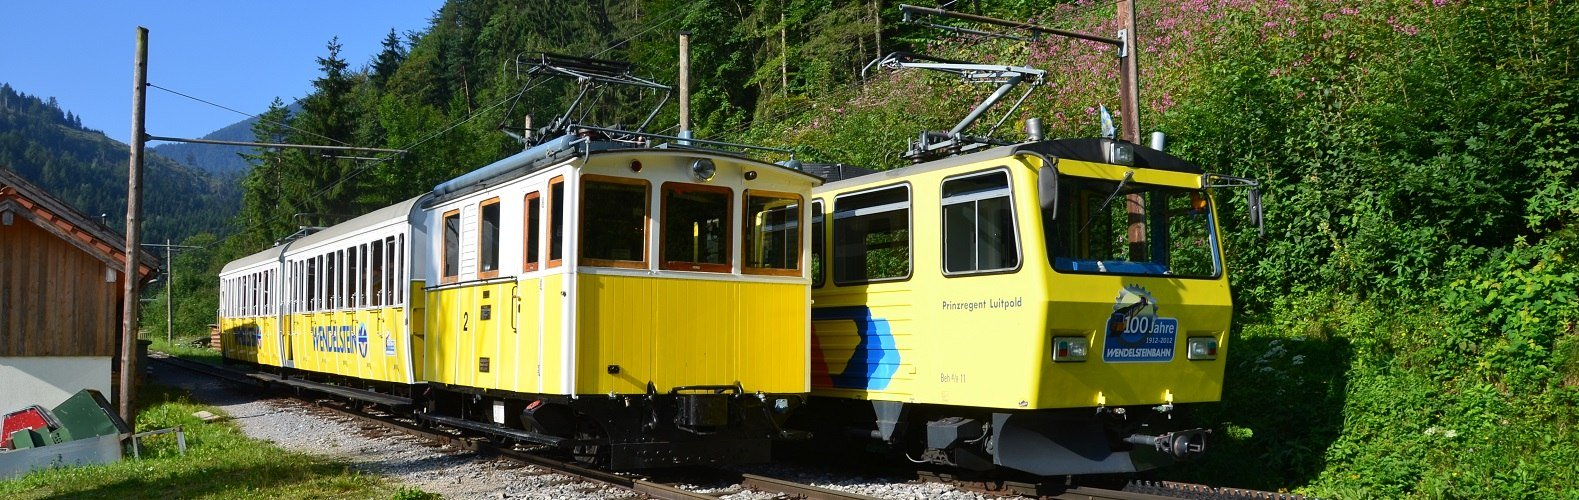 Nostalgiebahn und moderner Doppeltriebwagen der Wendelstein-Zahnradbahn auf der Strecke zwischen Talbahnhof und Wagenhalle, © Peter Hofmann